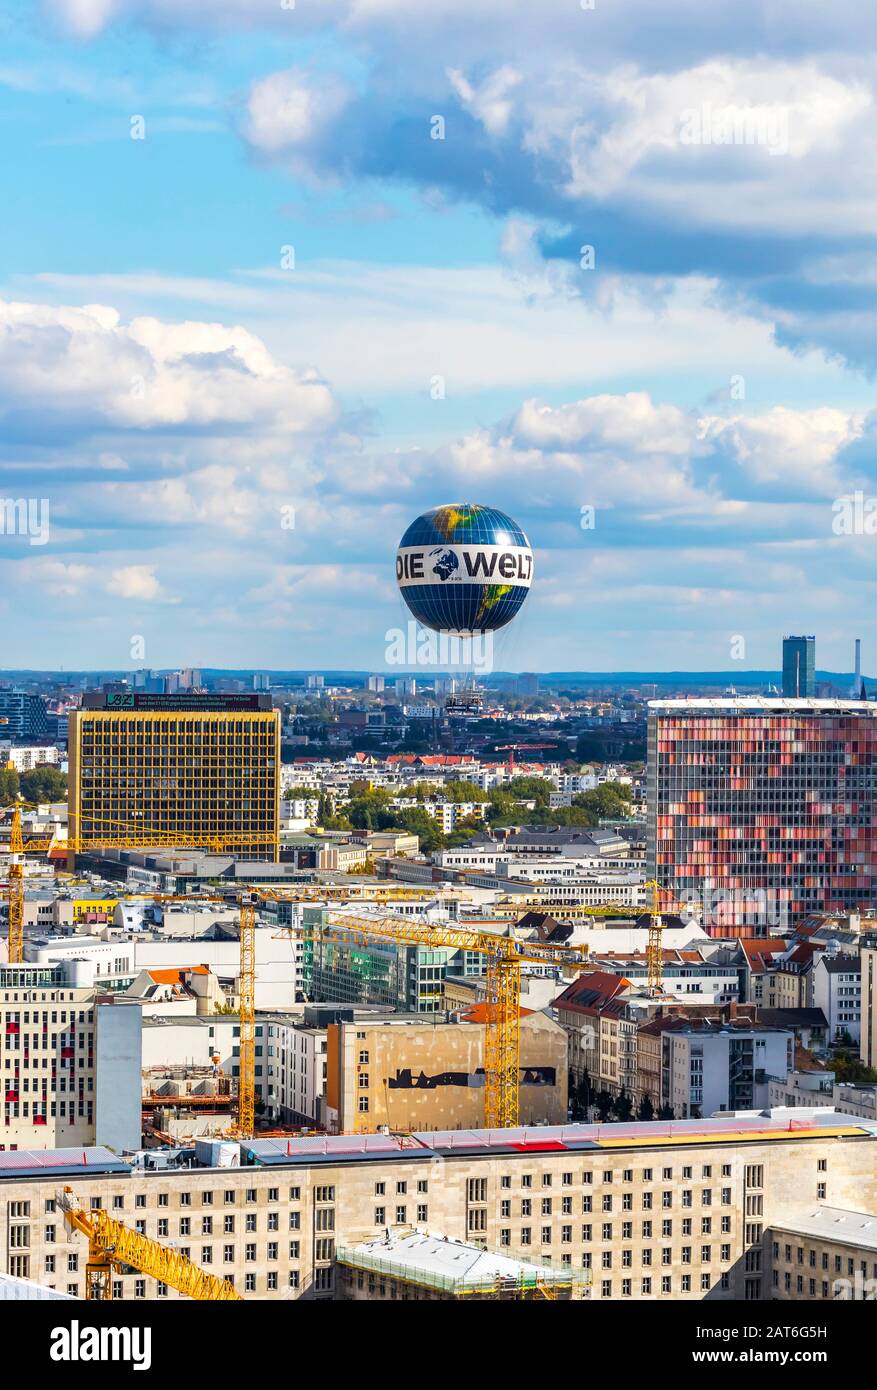 Berlin, Deutschland - 22. September 2017: Welt Balloon - einer der weltweit größten Heliumballons am Himmel über der Berliner Stadt. Beliebte Touristenattraktion Stockfoto